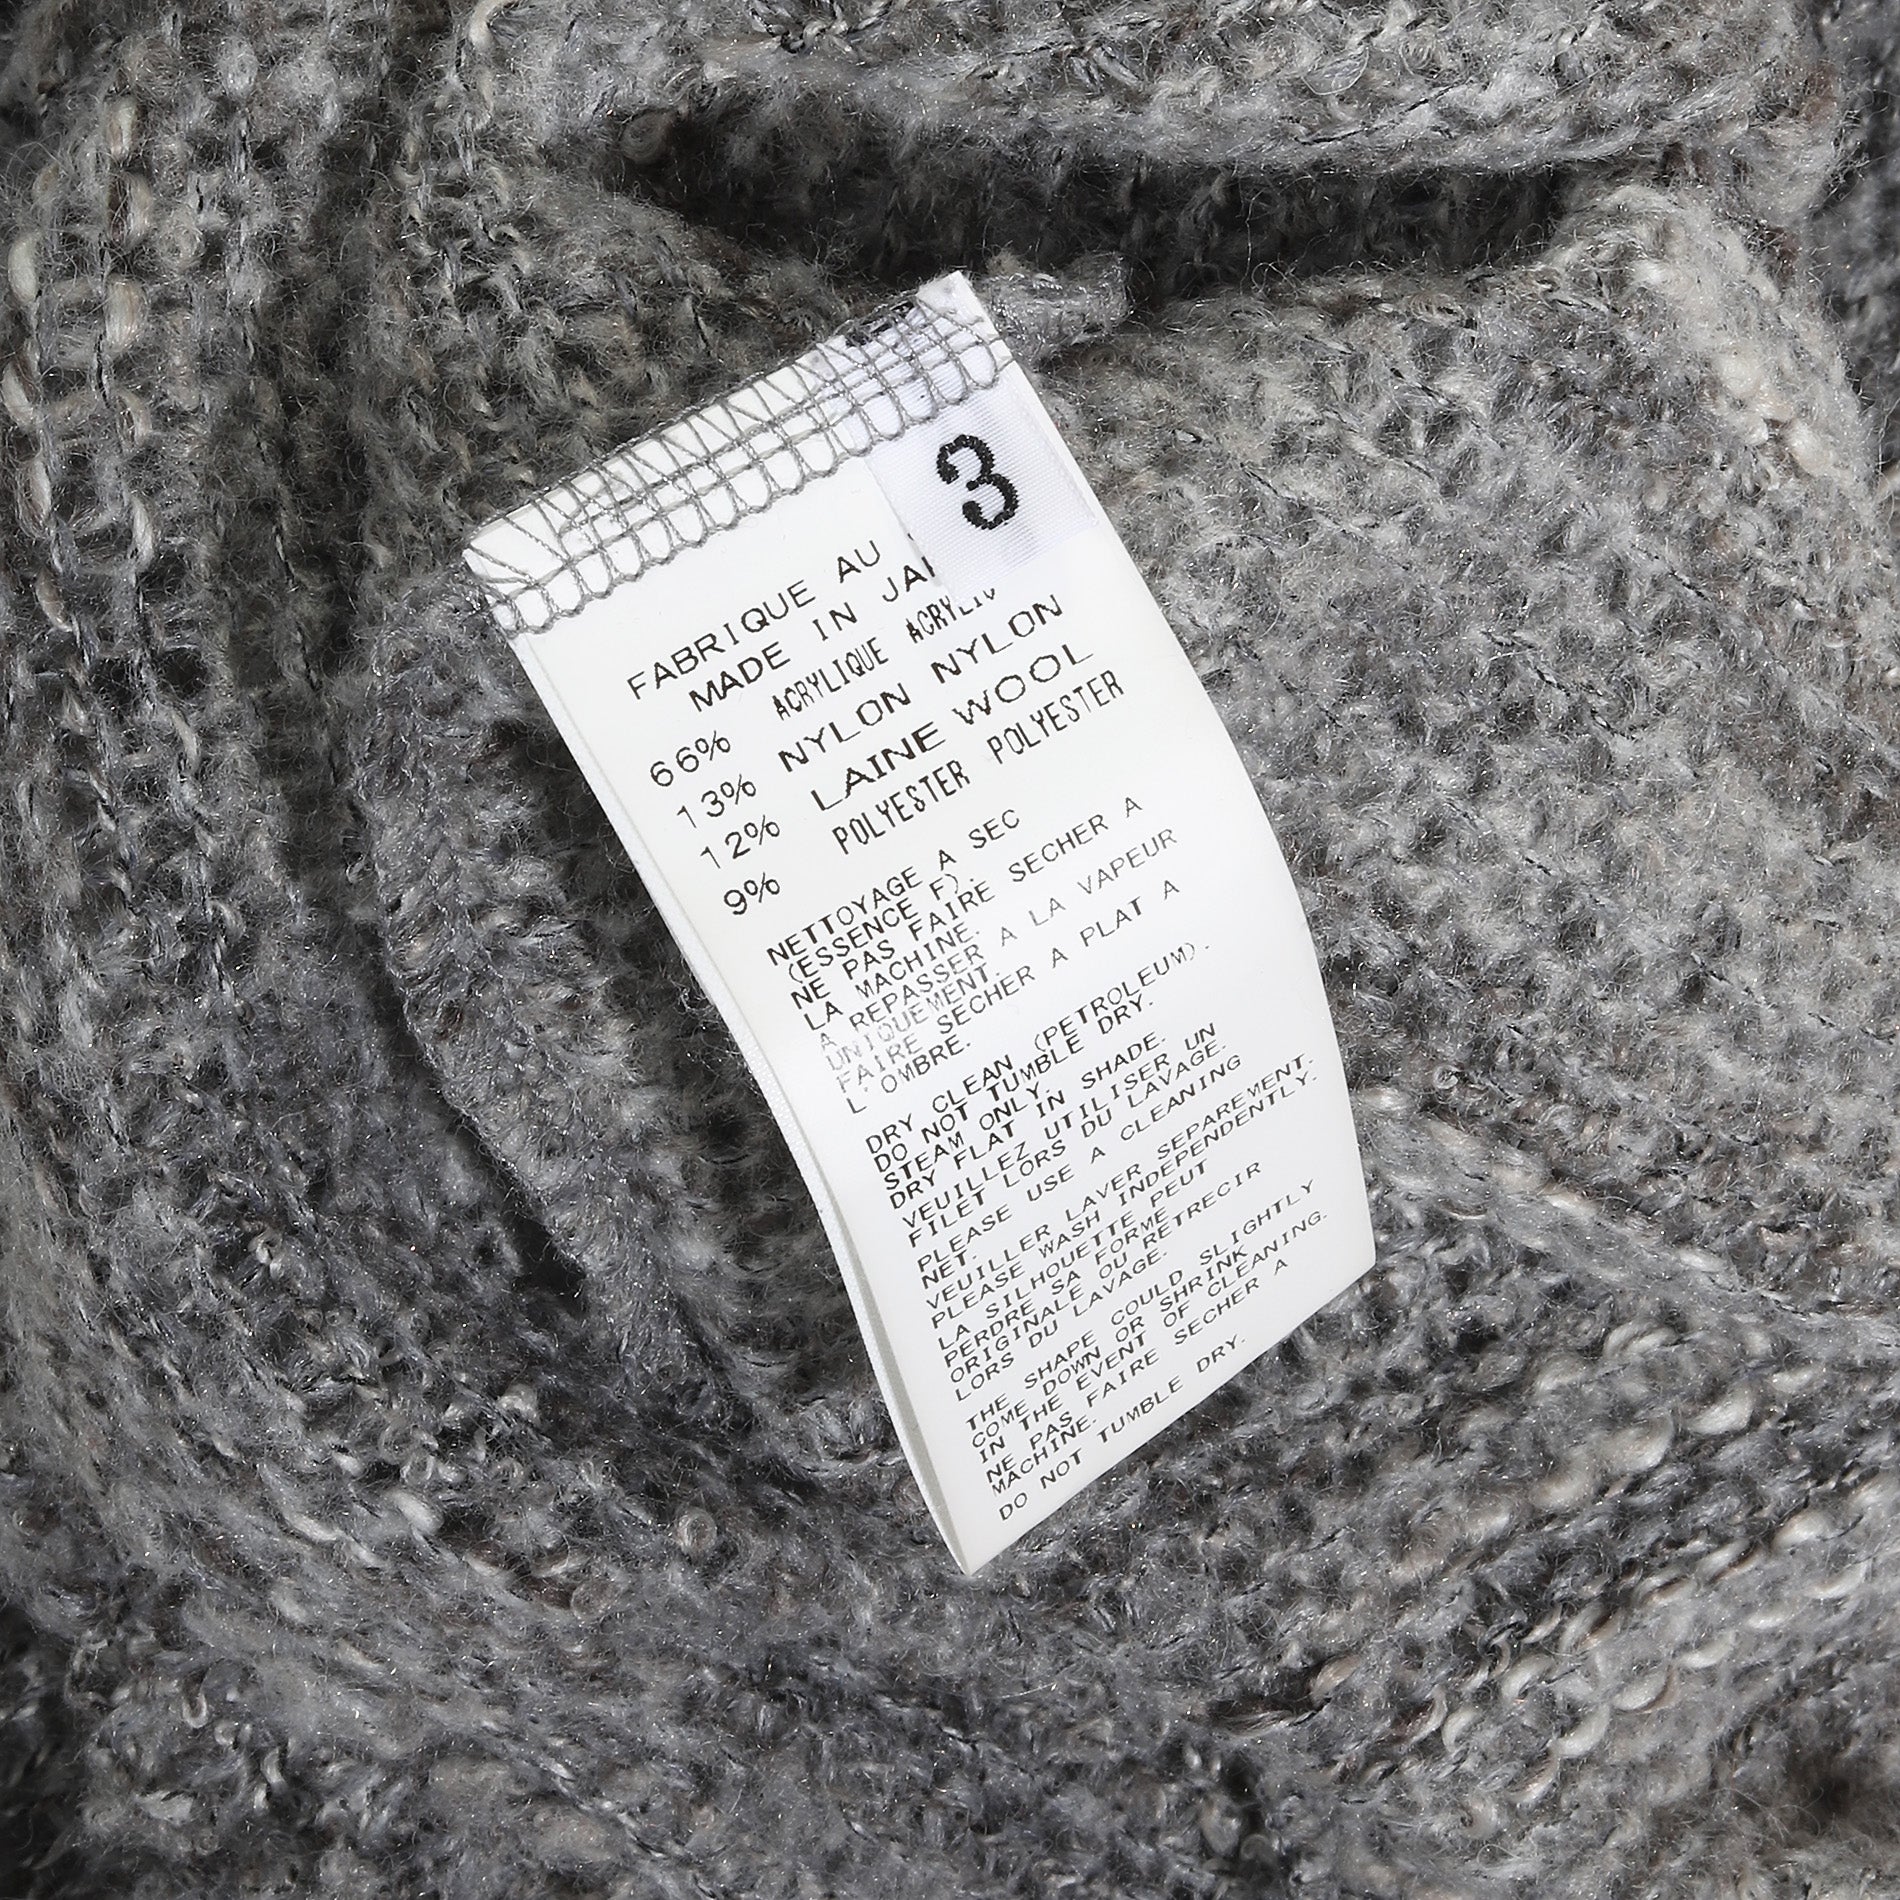 Yohji Yamamoto Pour Homme AW13 Raw Hem Wool Knit Sweater